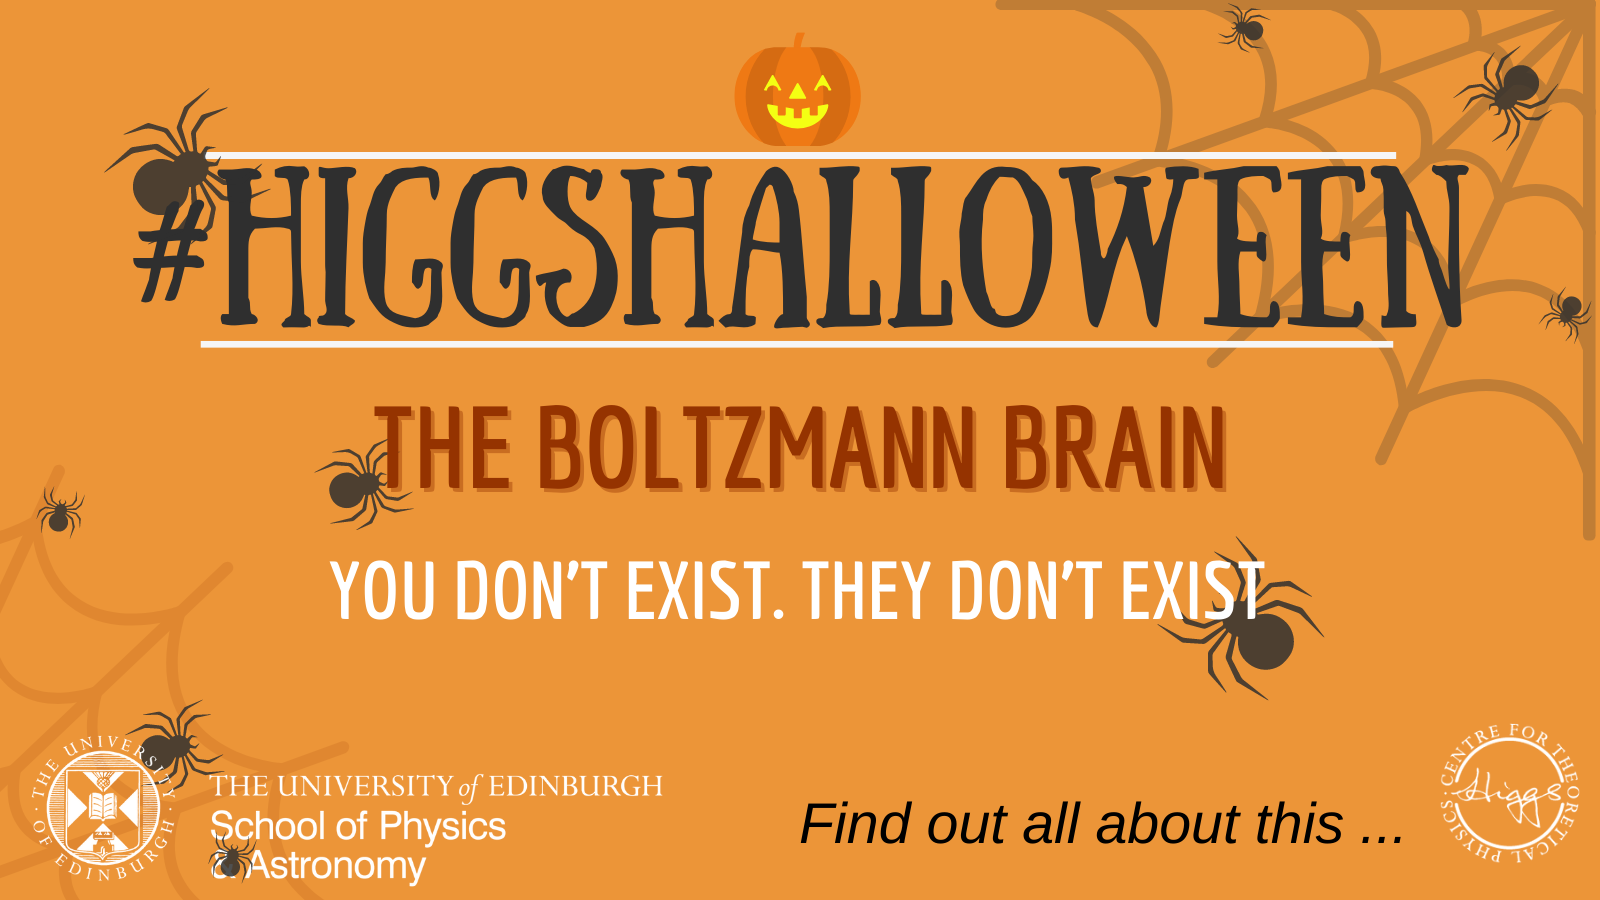 The Boltzmann Brain